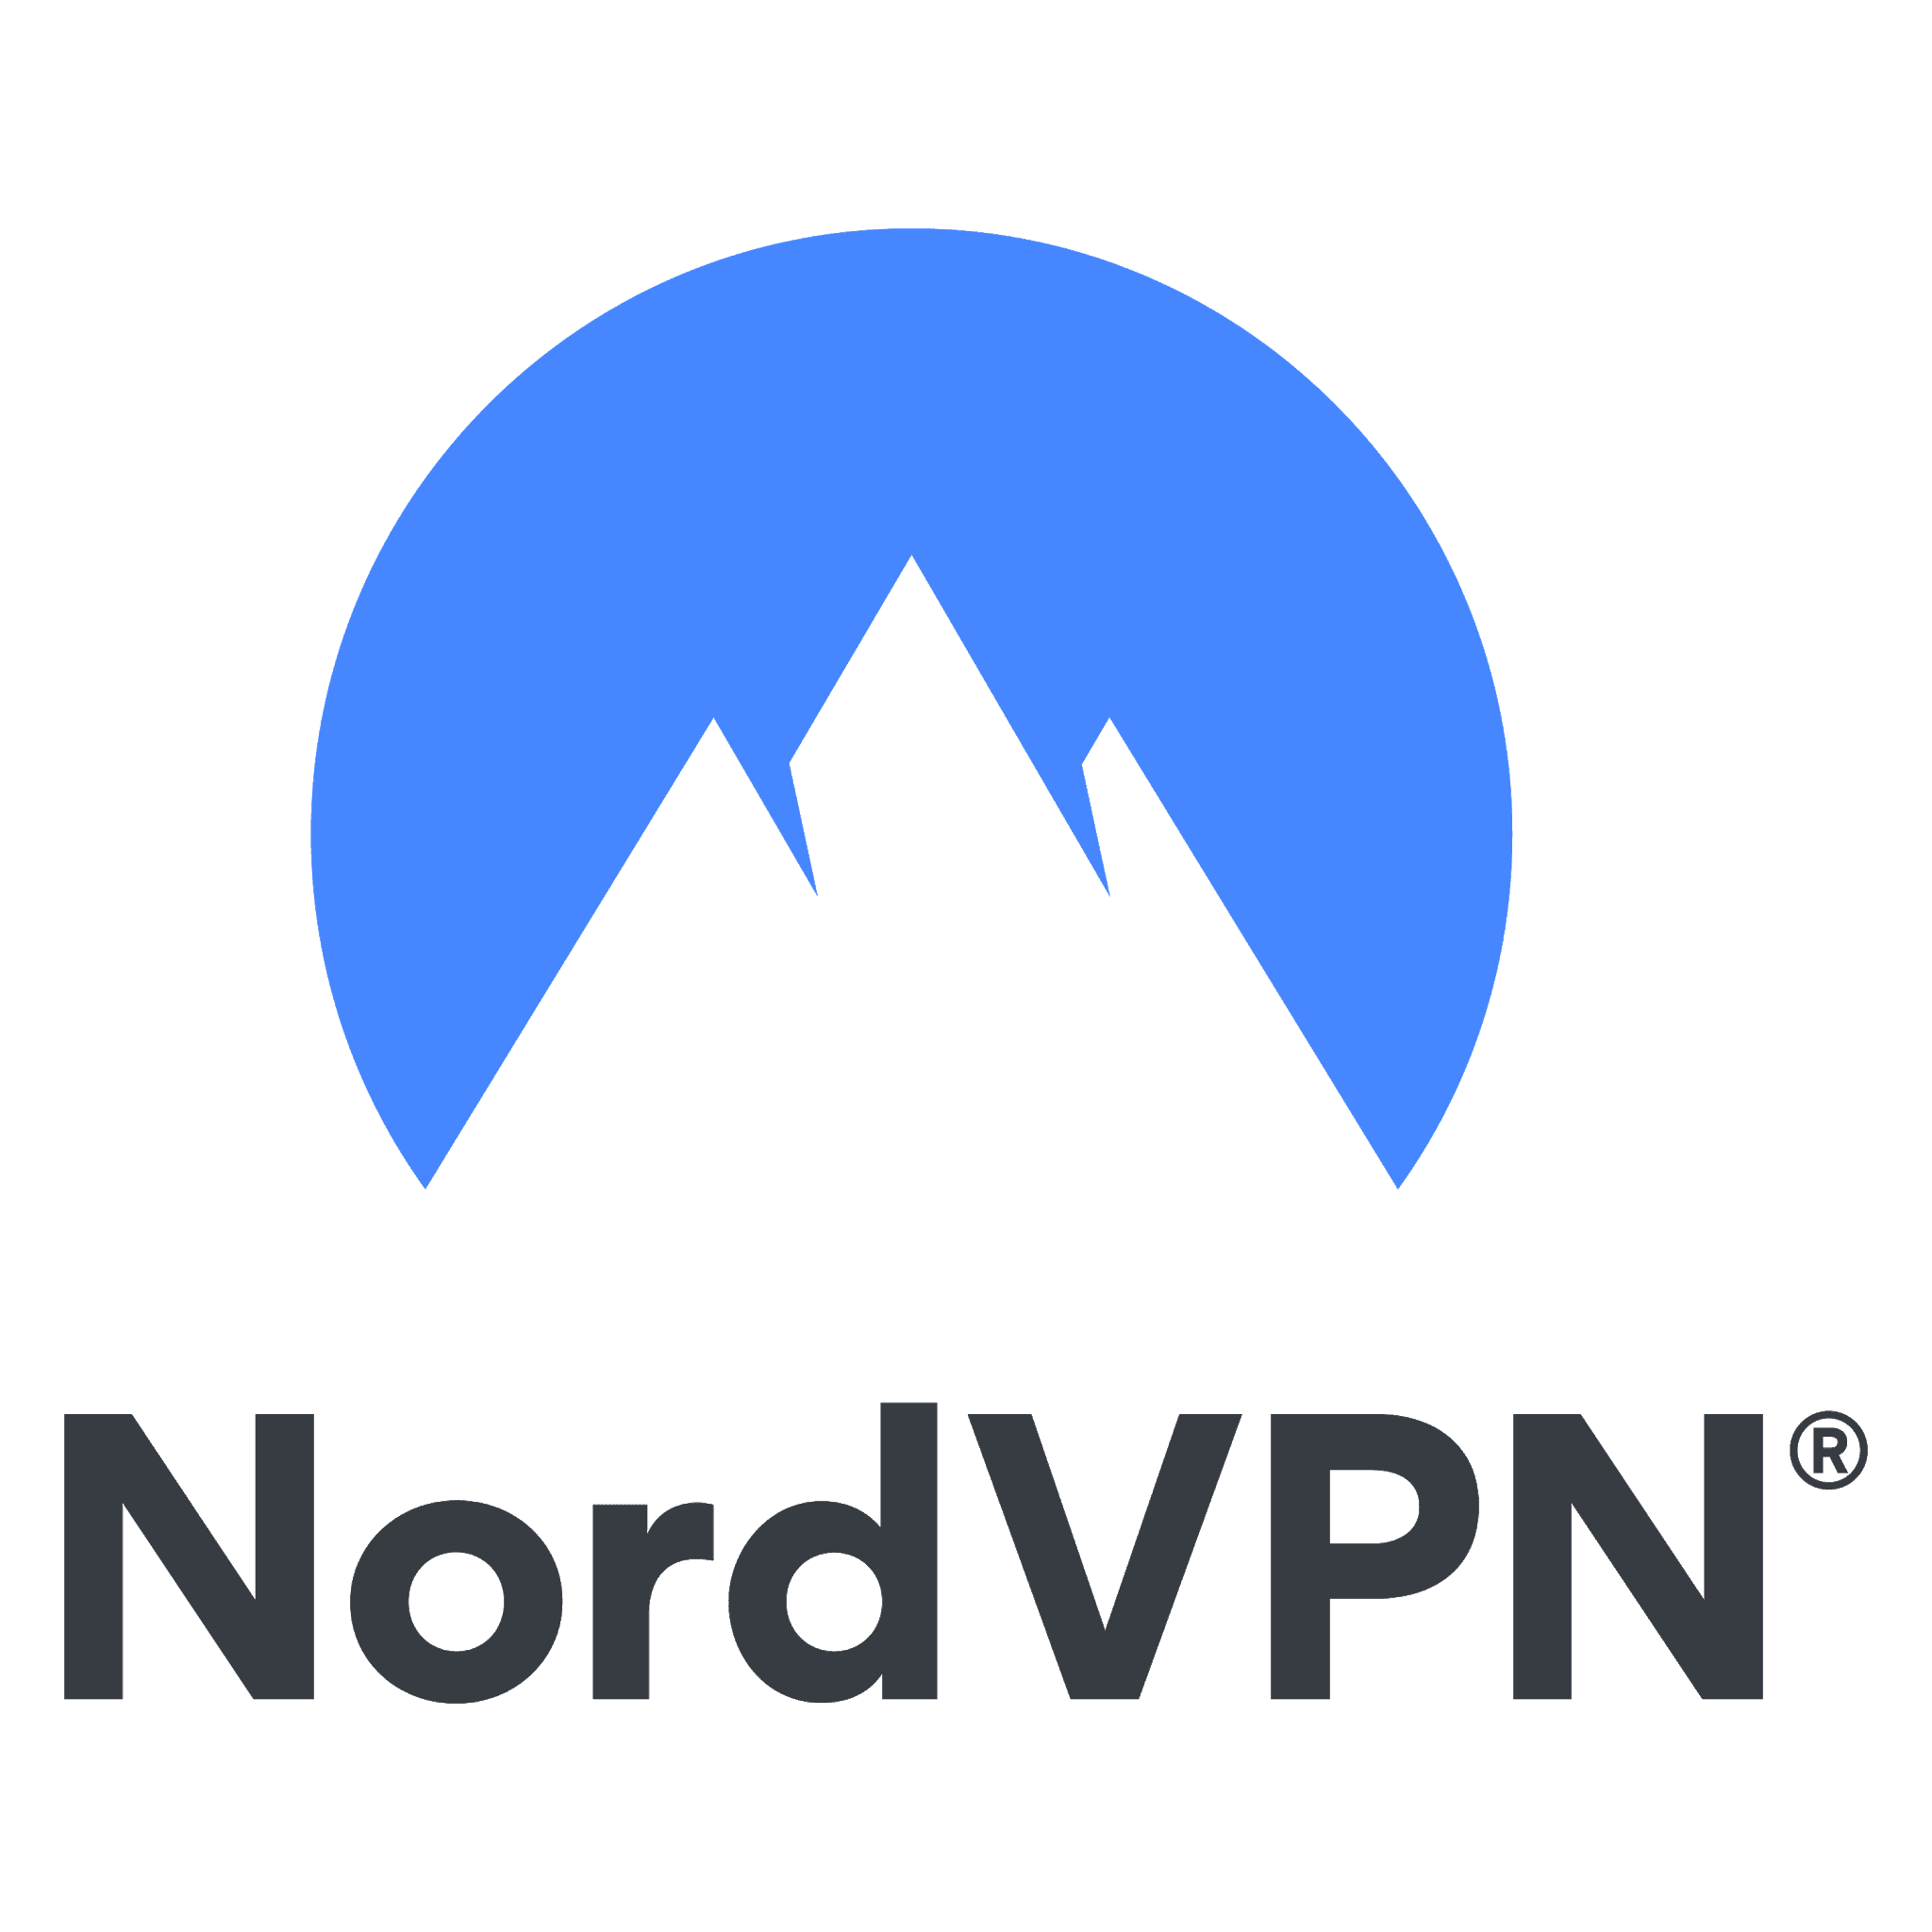 nordvpn download link